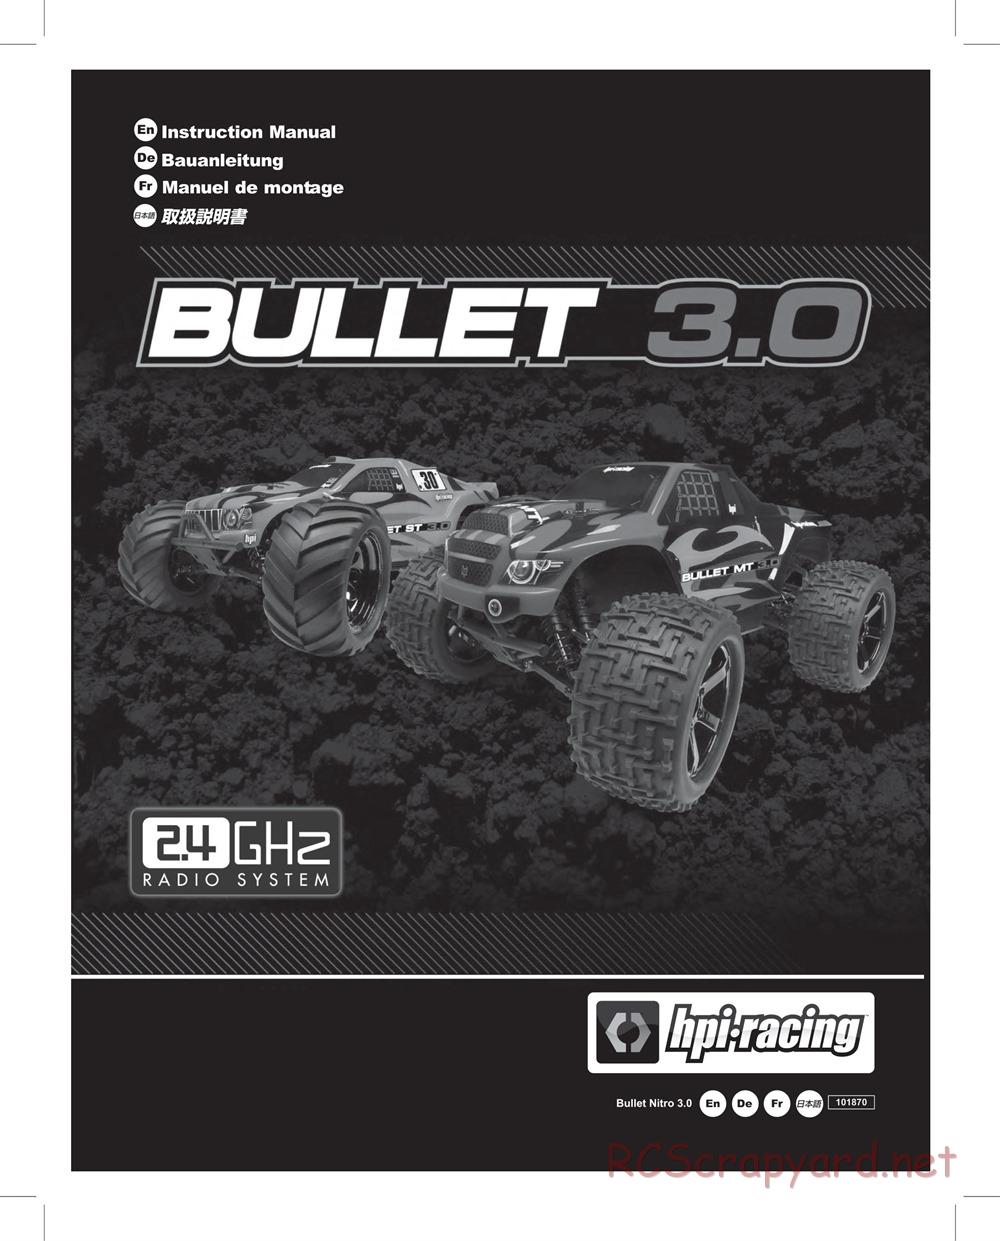 HPI - Bullet ST 3.0 (2011) - Manual - Page 1